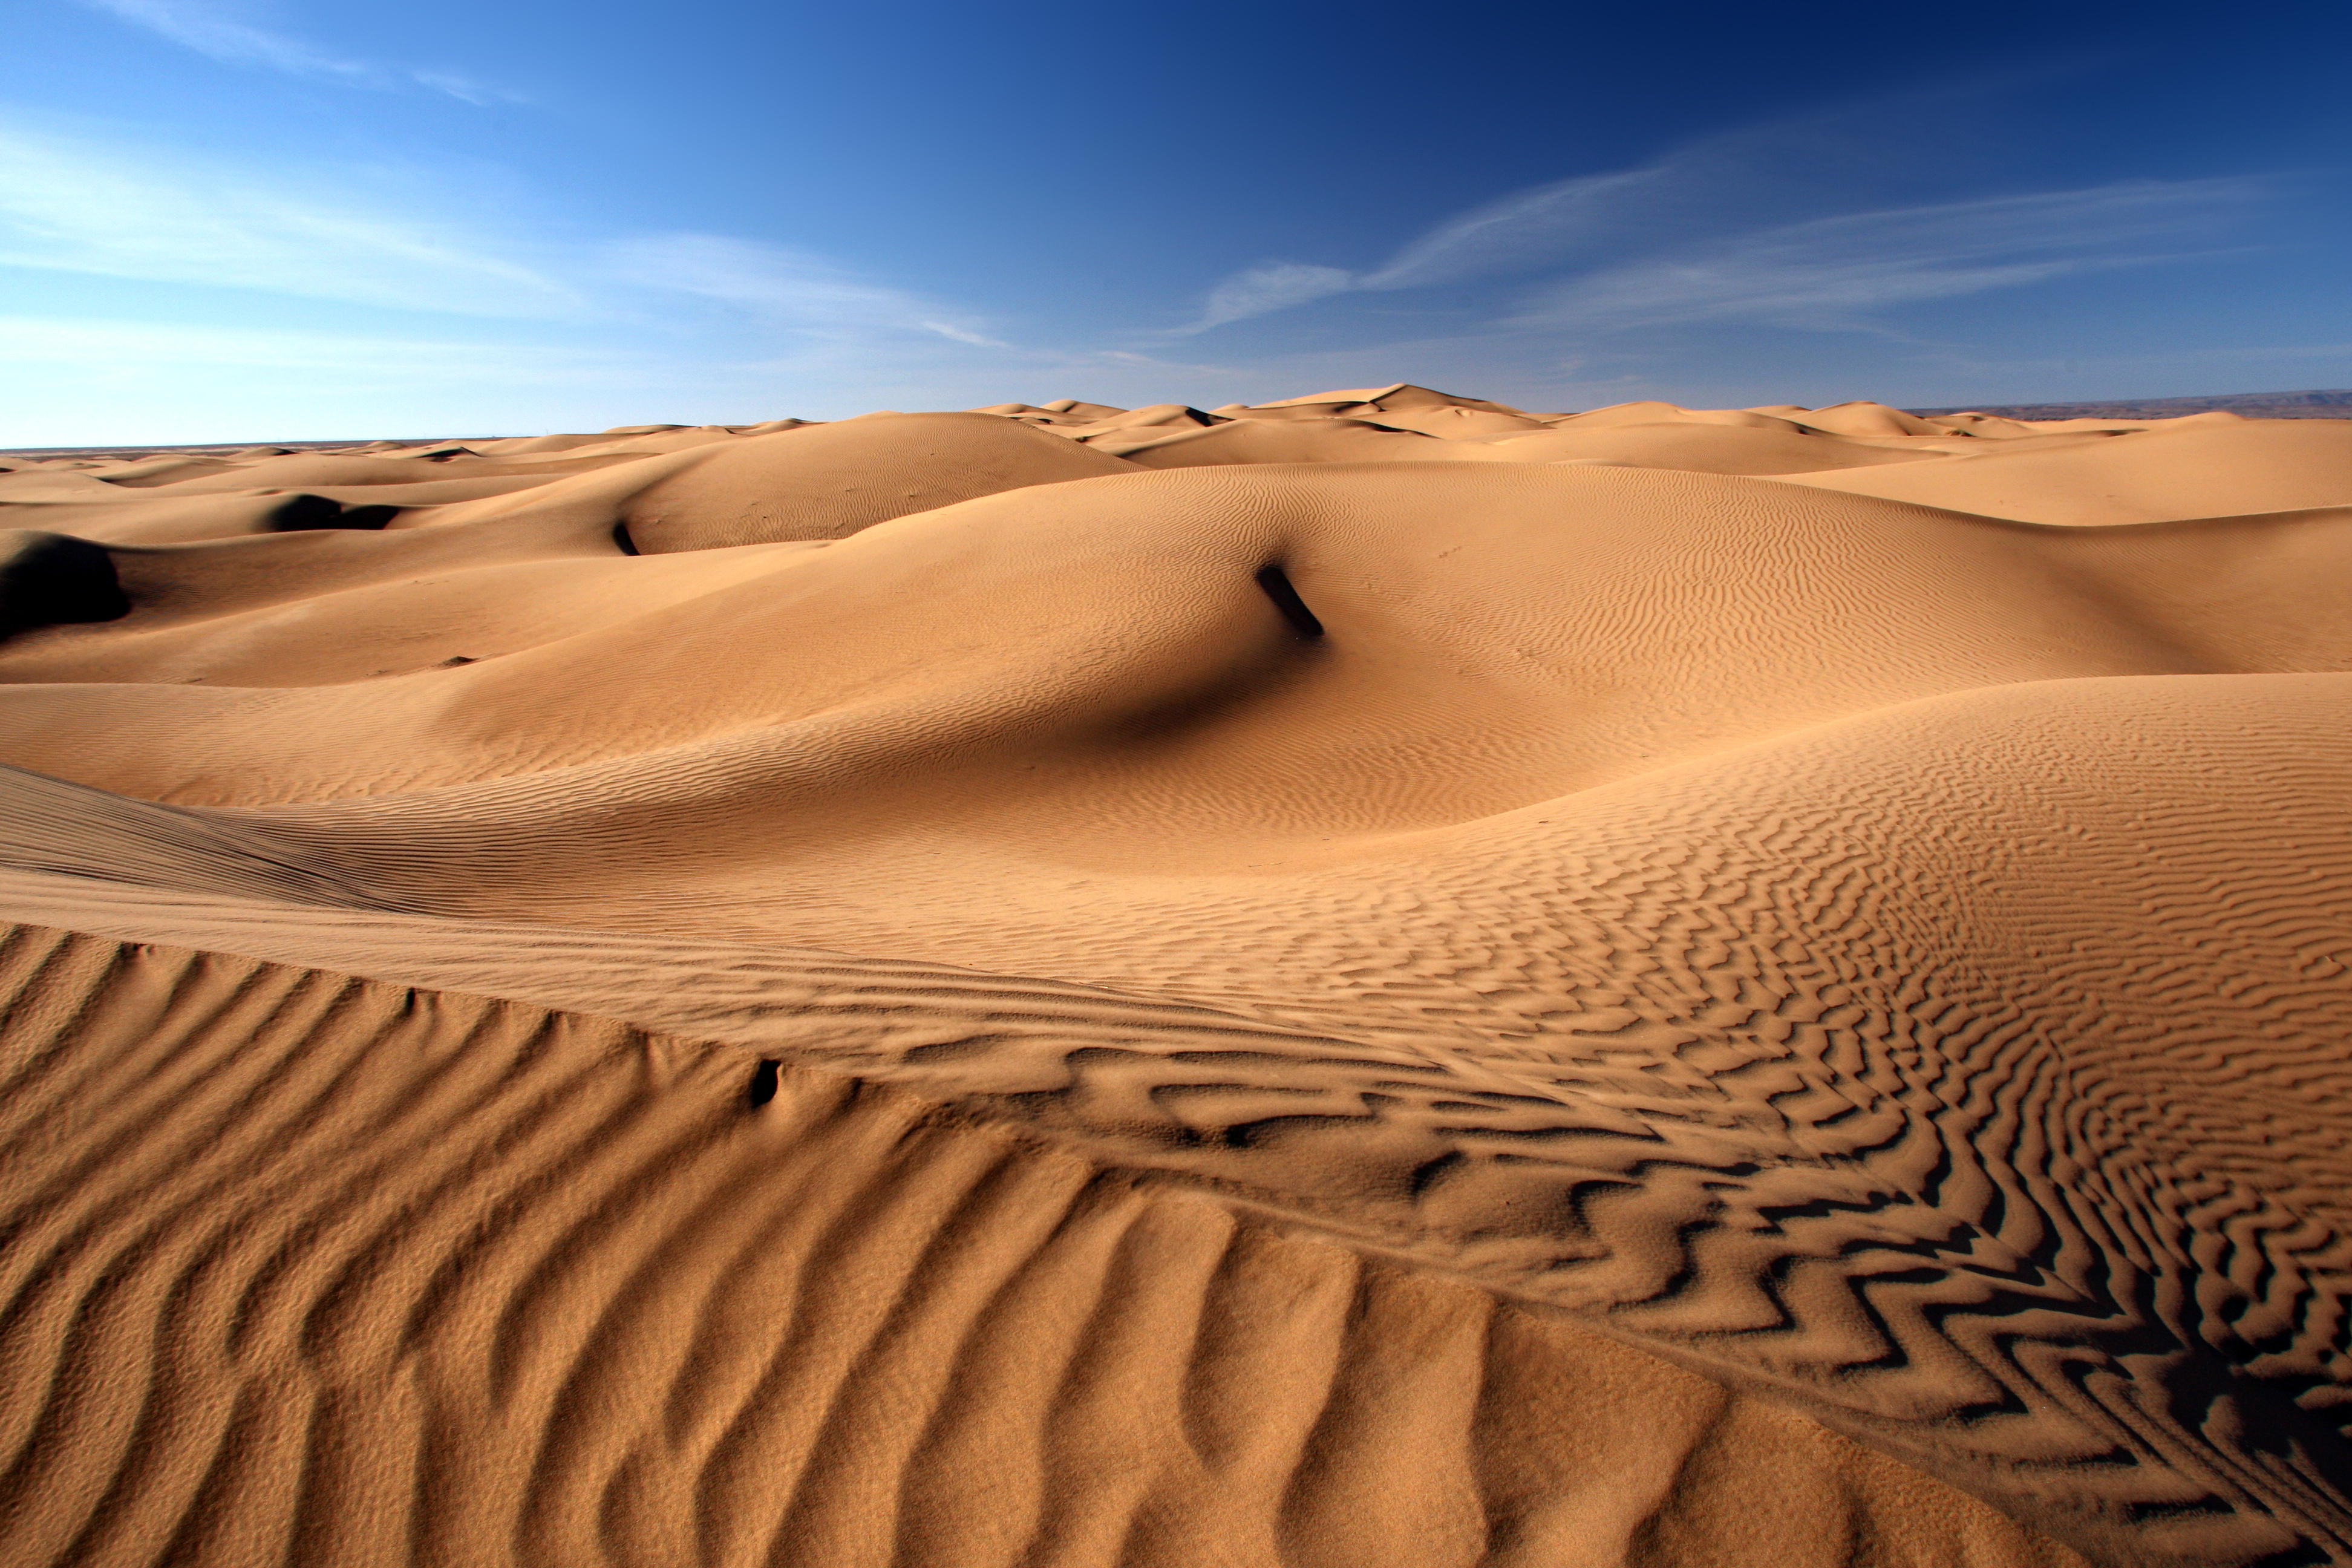 Le principe de la relation entre le nombre d'onde et la longueur d'onde peut-être utilisé pour étudier les ondulations sur les dunes du désert, et la façon dont elles se forment et évoluent sous l'action du vent. En mesurant la longueur d'onde et l'amplitude de ces ondes stationnaires, on peut prévoir les mouvements de sable dans le désert et protéger les infrastructures et les habitations contre les effets des dunes. © khorixas, Adobe Stock